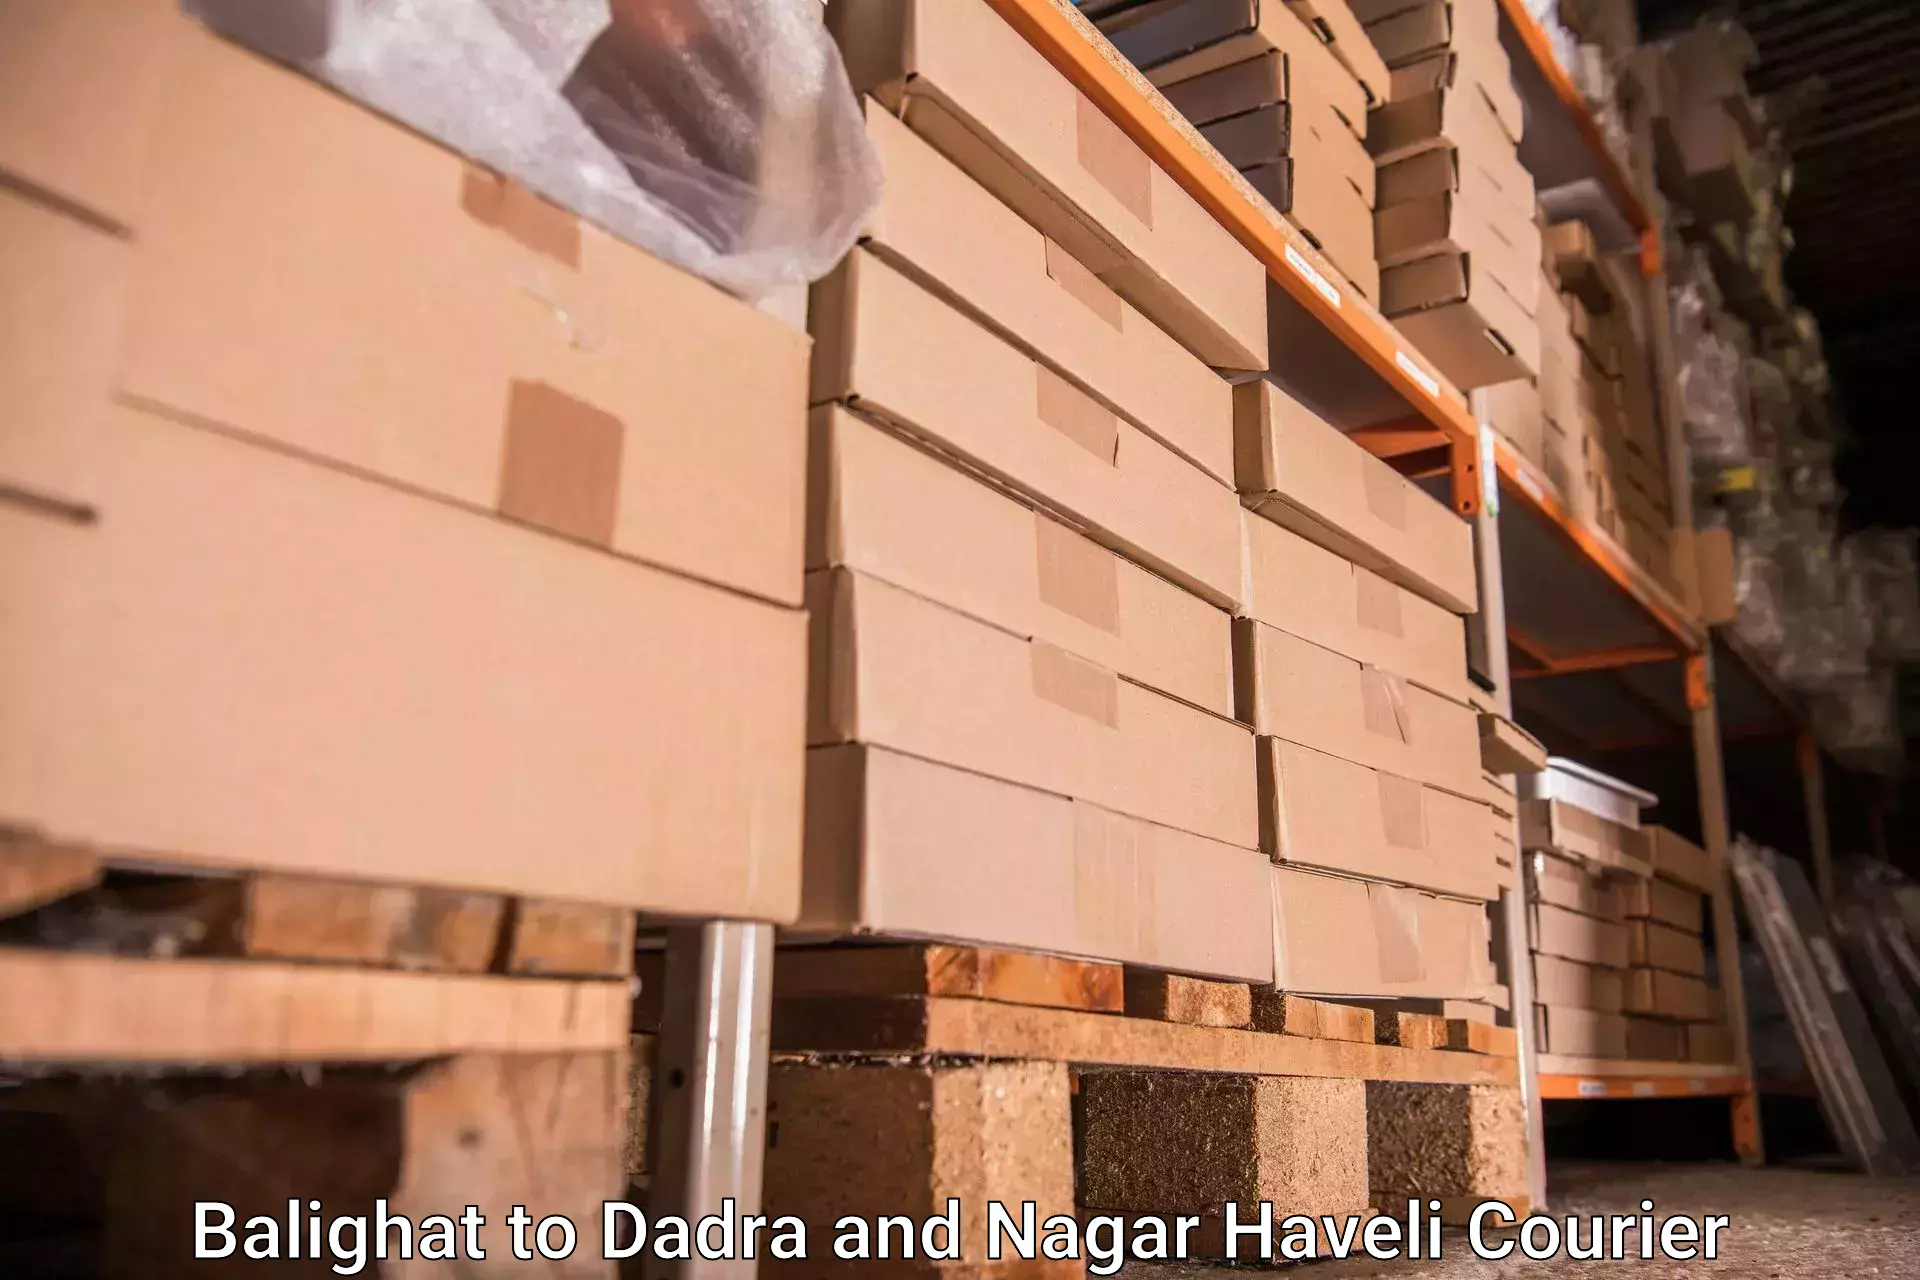 High-quality baggage shipment Balighat to Dadra and Nagar Haveli